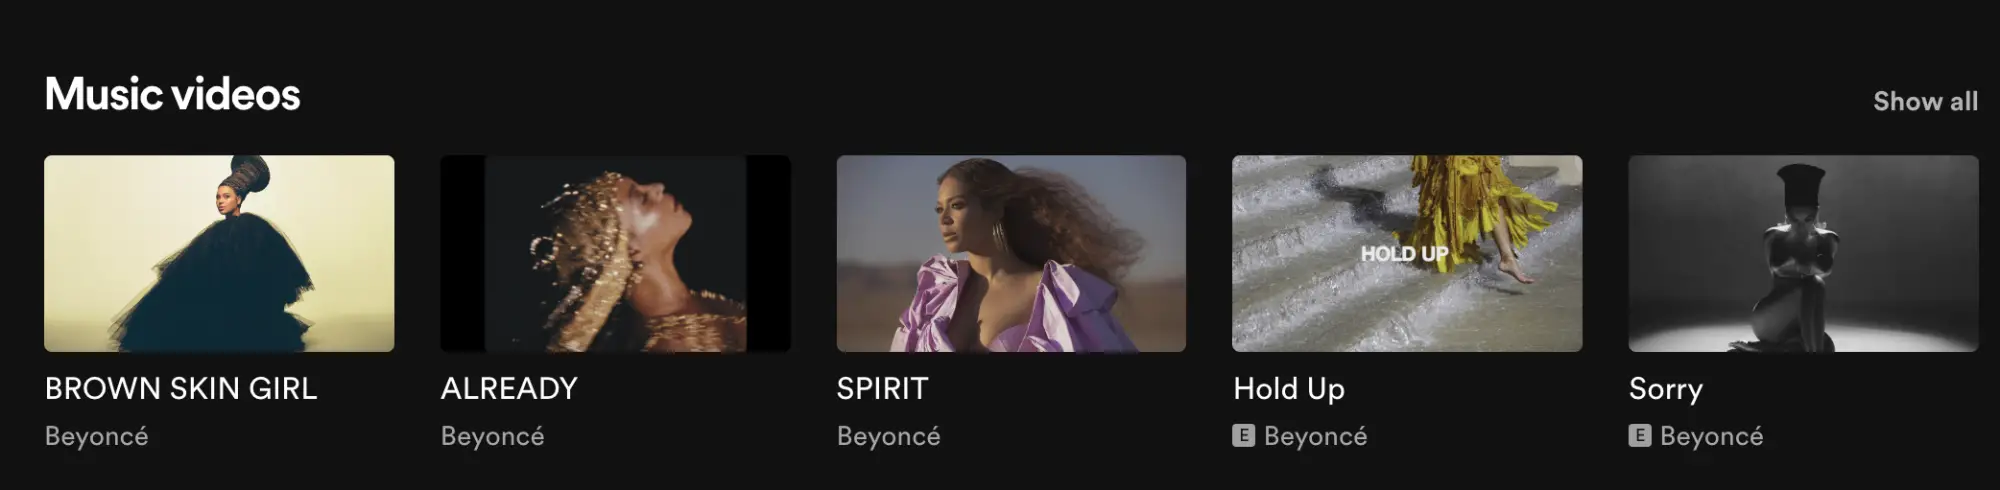 Une capture d'écran de Spotify montrant un carrousel de clips vidéo de Beyoncé.